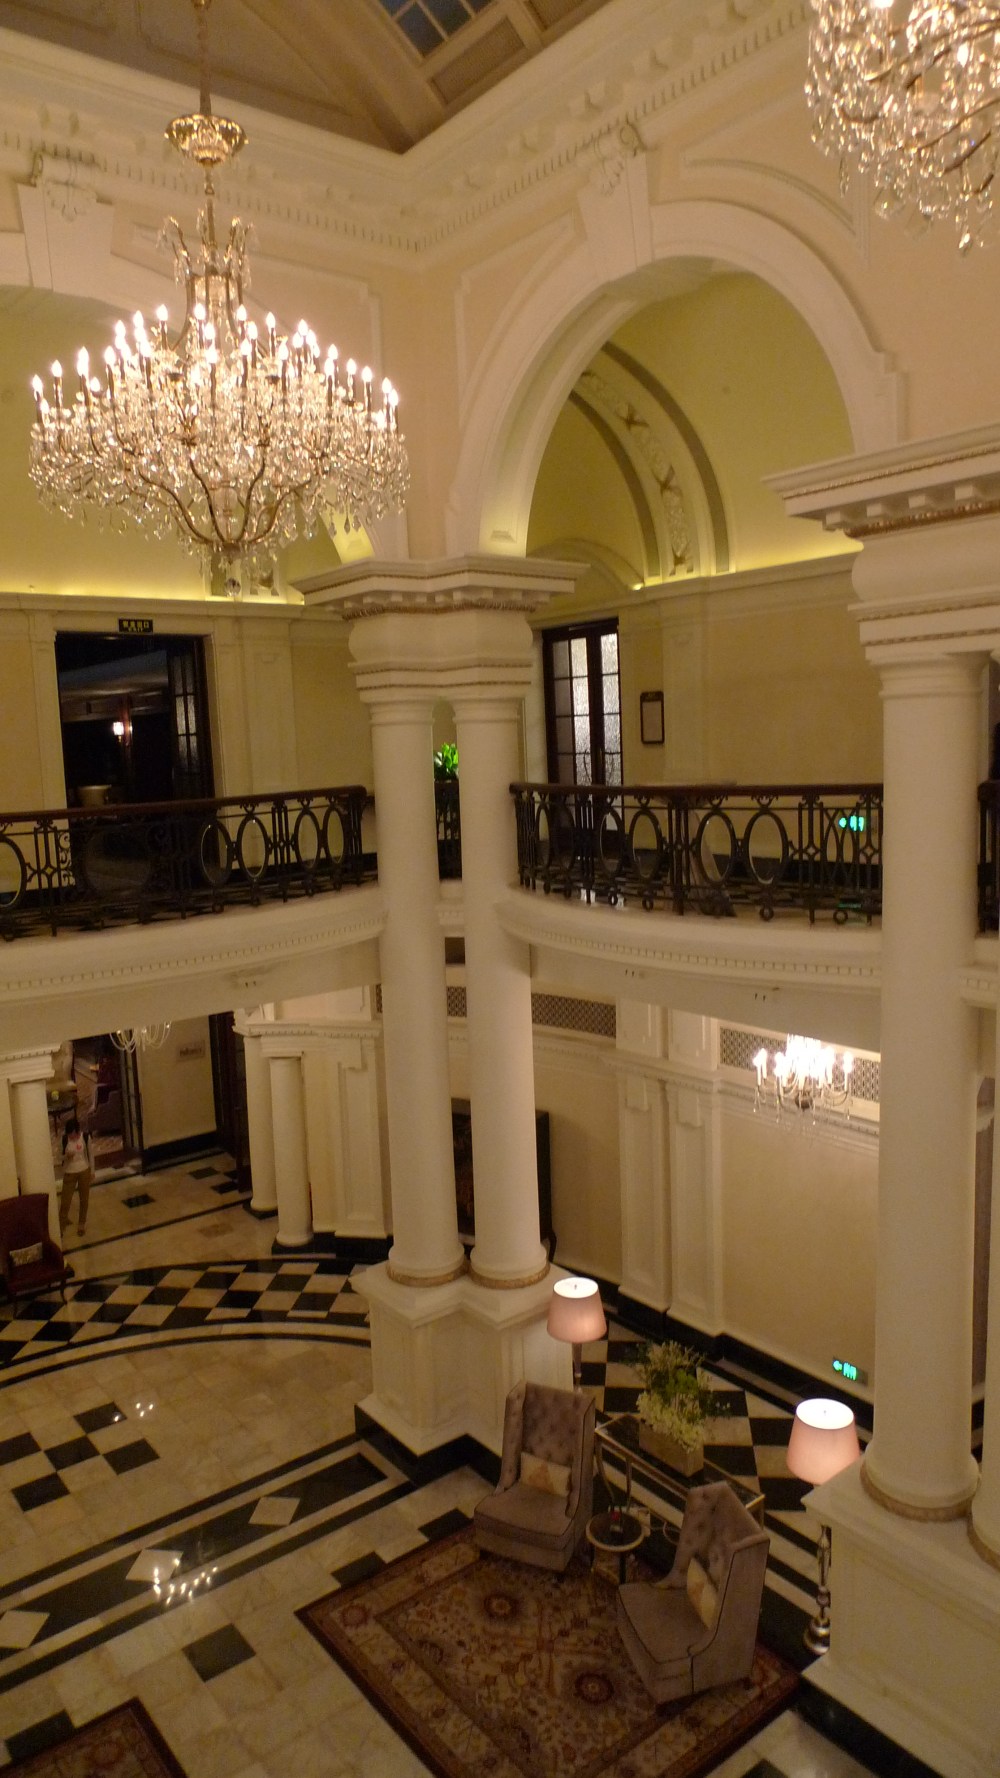 上海华尔道夫酒店(The Waldorf Astoria OnTheBund)(HBA)10.9第10页更新_L1050002.JPG